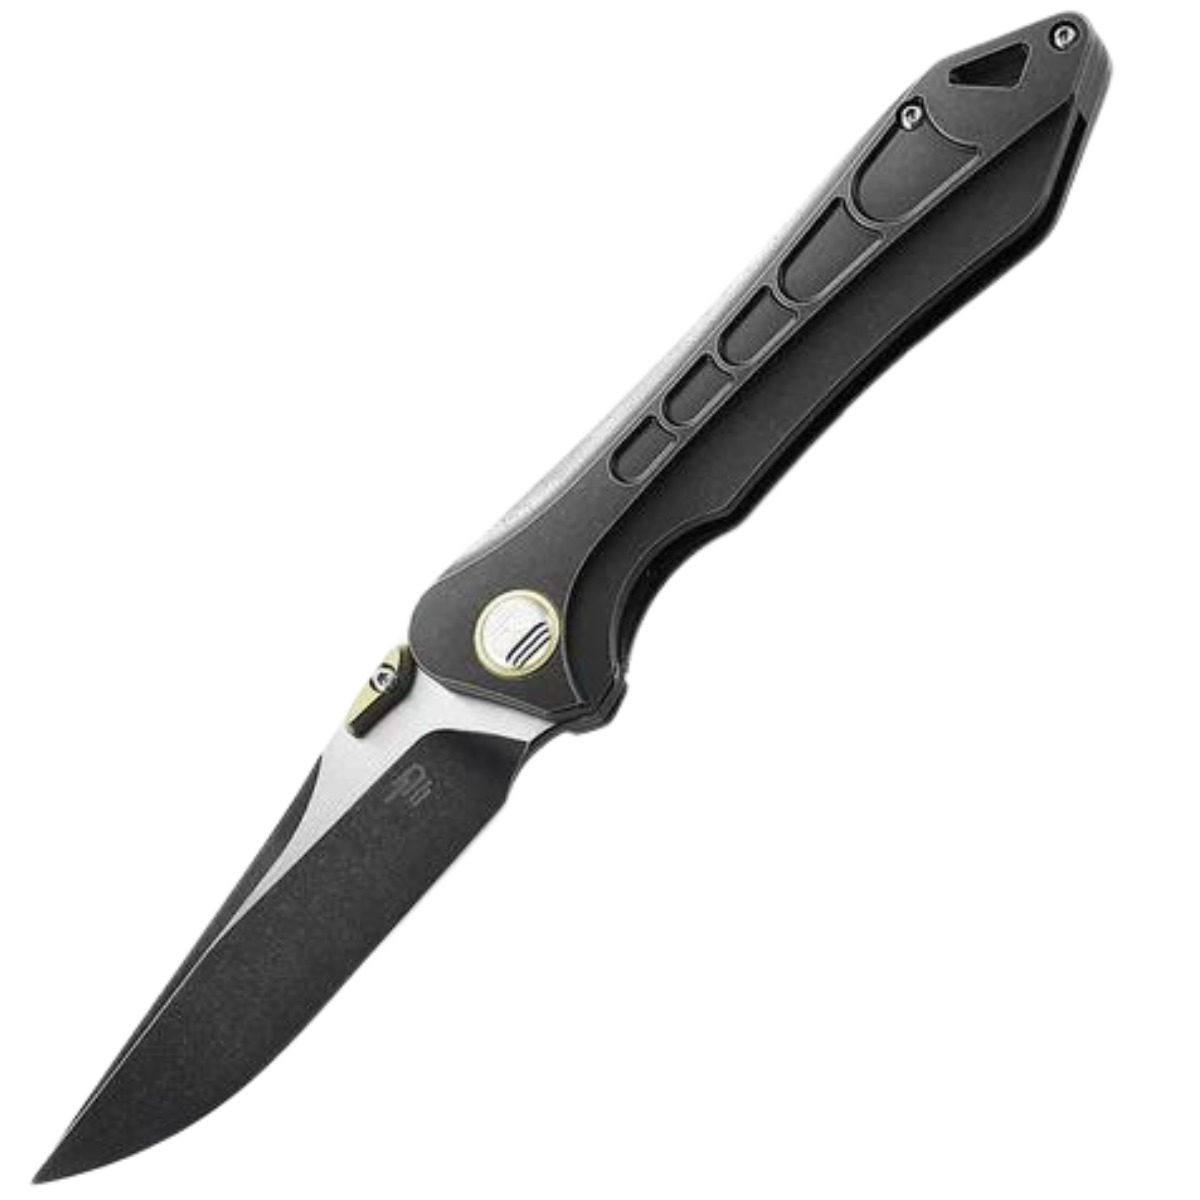 Bestech Knife Supersonic Black Titanium BT1908A